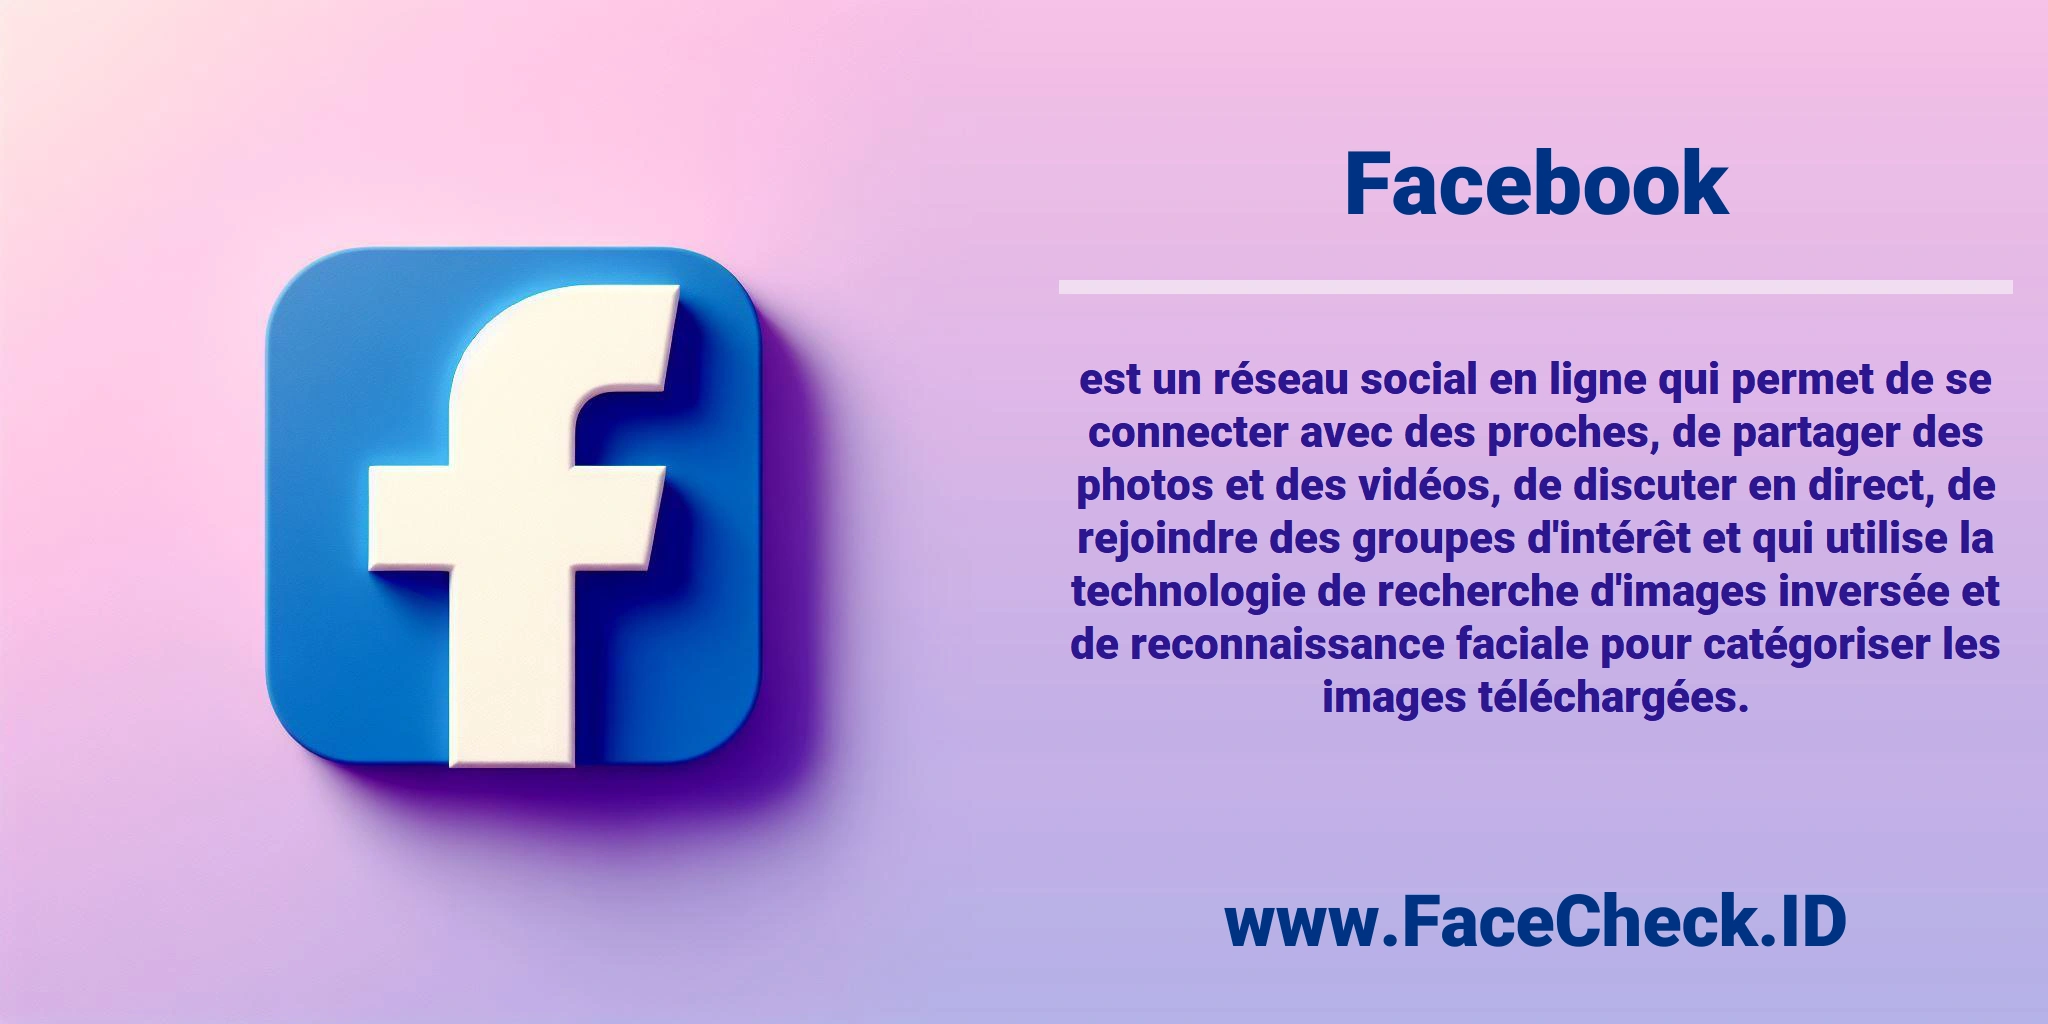 <b>Facebook</b> est un réseau social en ligne qui permet de se connecter avec des proches, de partager des photos et des vidéos, de discuter en direct, de rejoindre des groupes d'intérêt et qui utilise la technologie de recherche d'images inversée et de reconnaissance faciale pour catégoriser les images téléchargées.